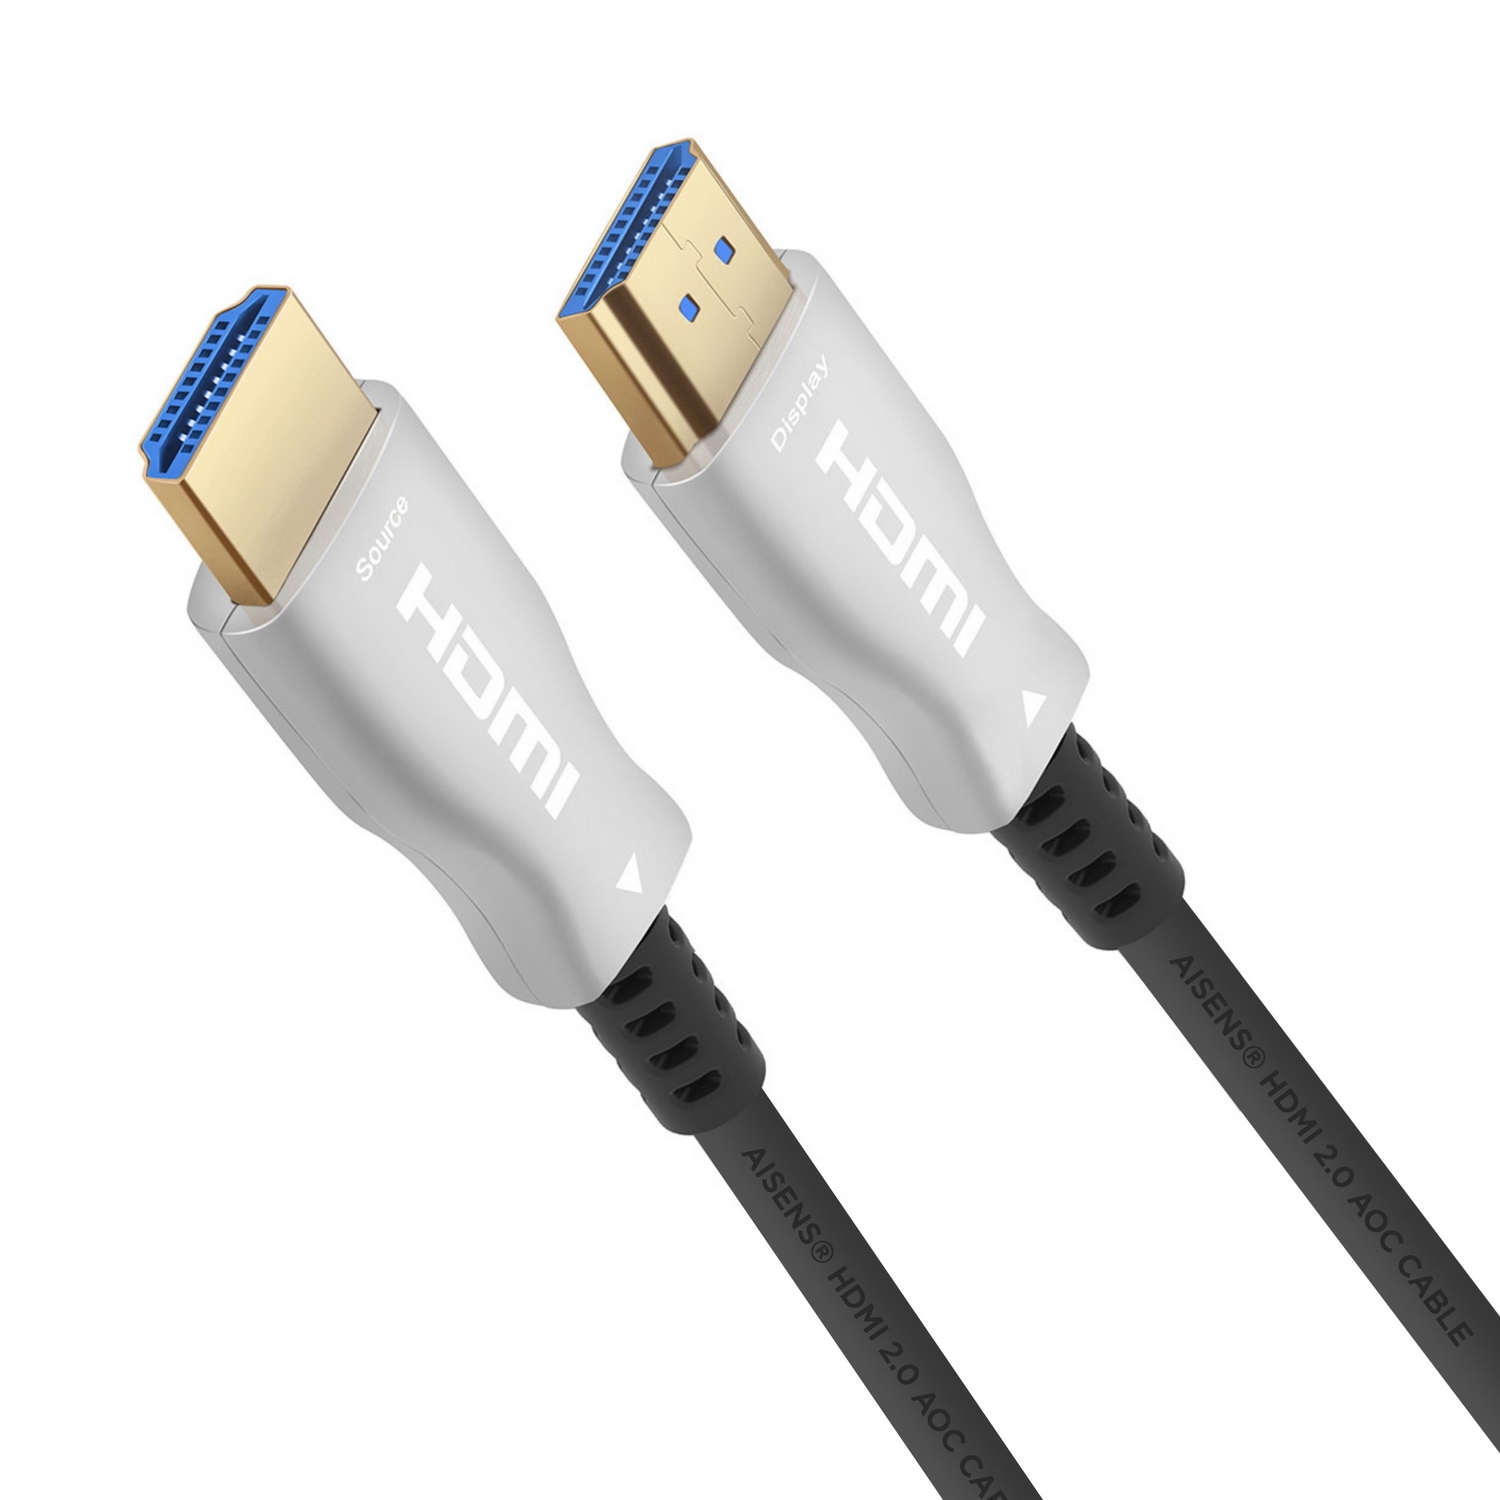 Cable HDMI 4K HDR de 3 a 300 pies /.914 a 91.44 metros, 144 Hz de alta  velocidad Ultra HD, HDMI 2.0 18 Gbps, Fiber Optic HDMI Cable HDMI Negro